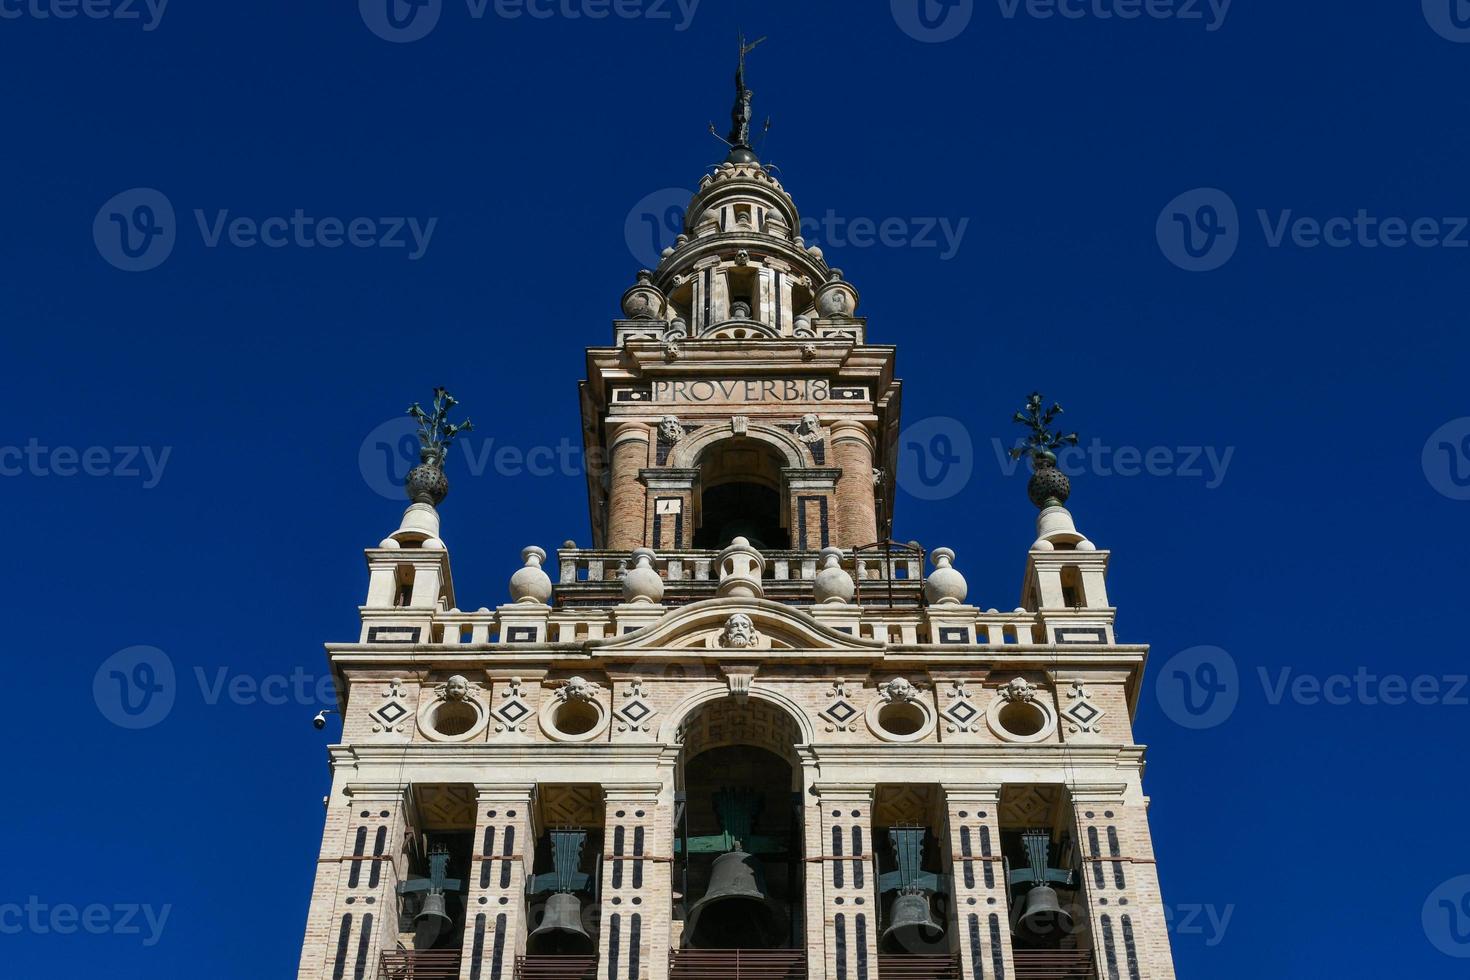 la giralda, campana torre de el Sevilla catedral en España. foto